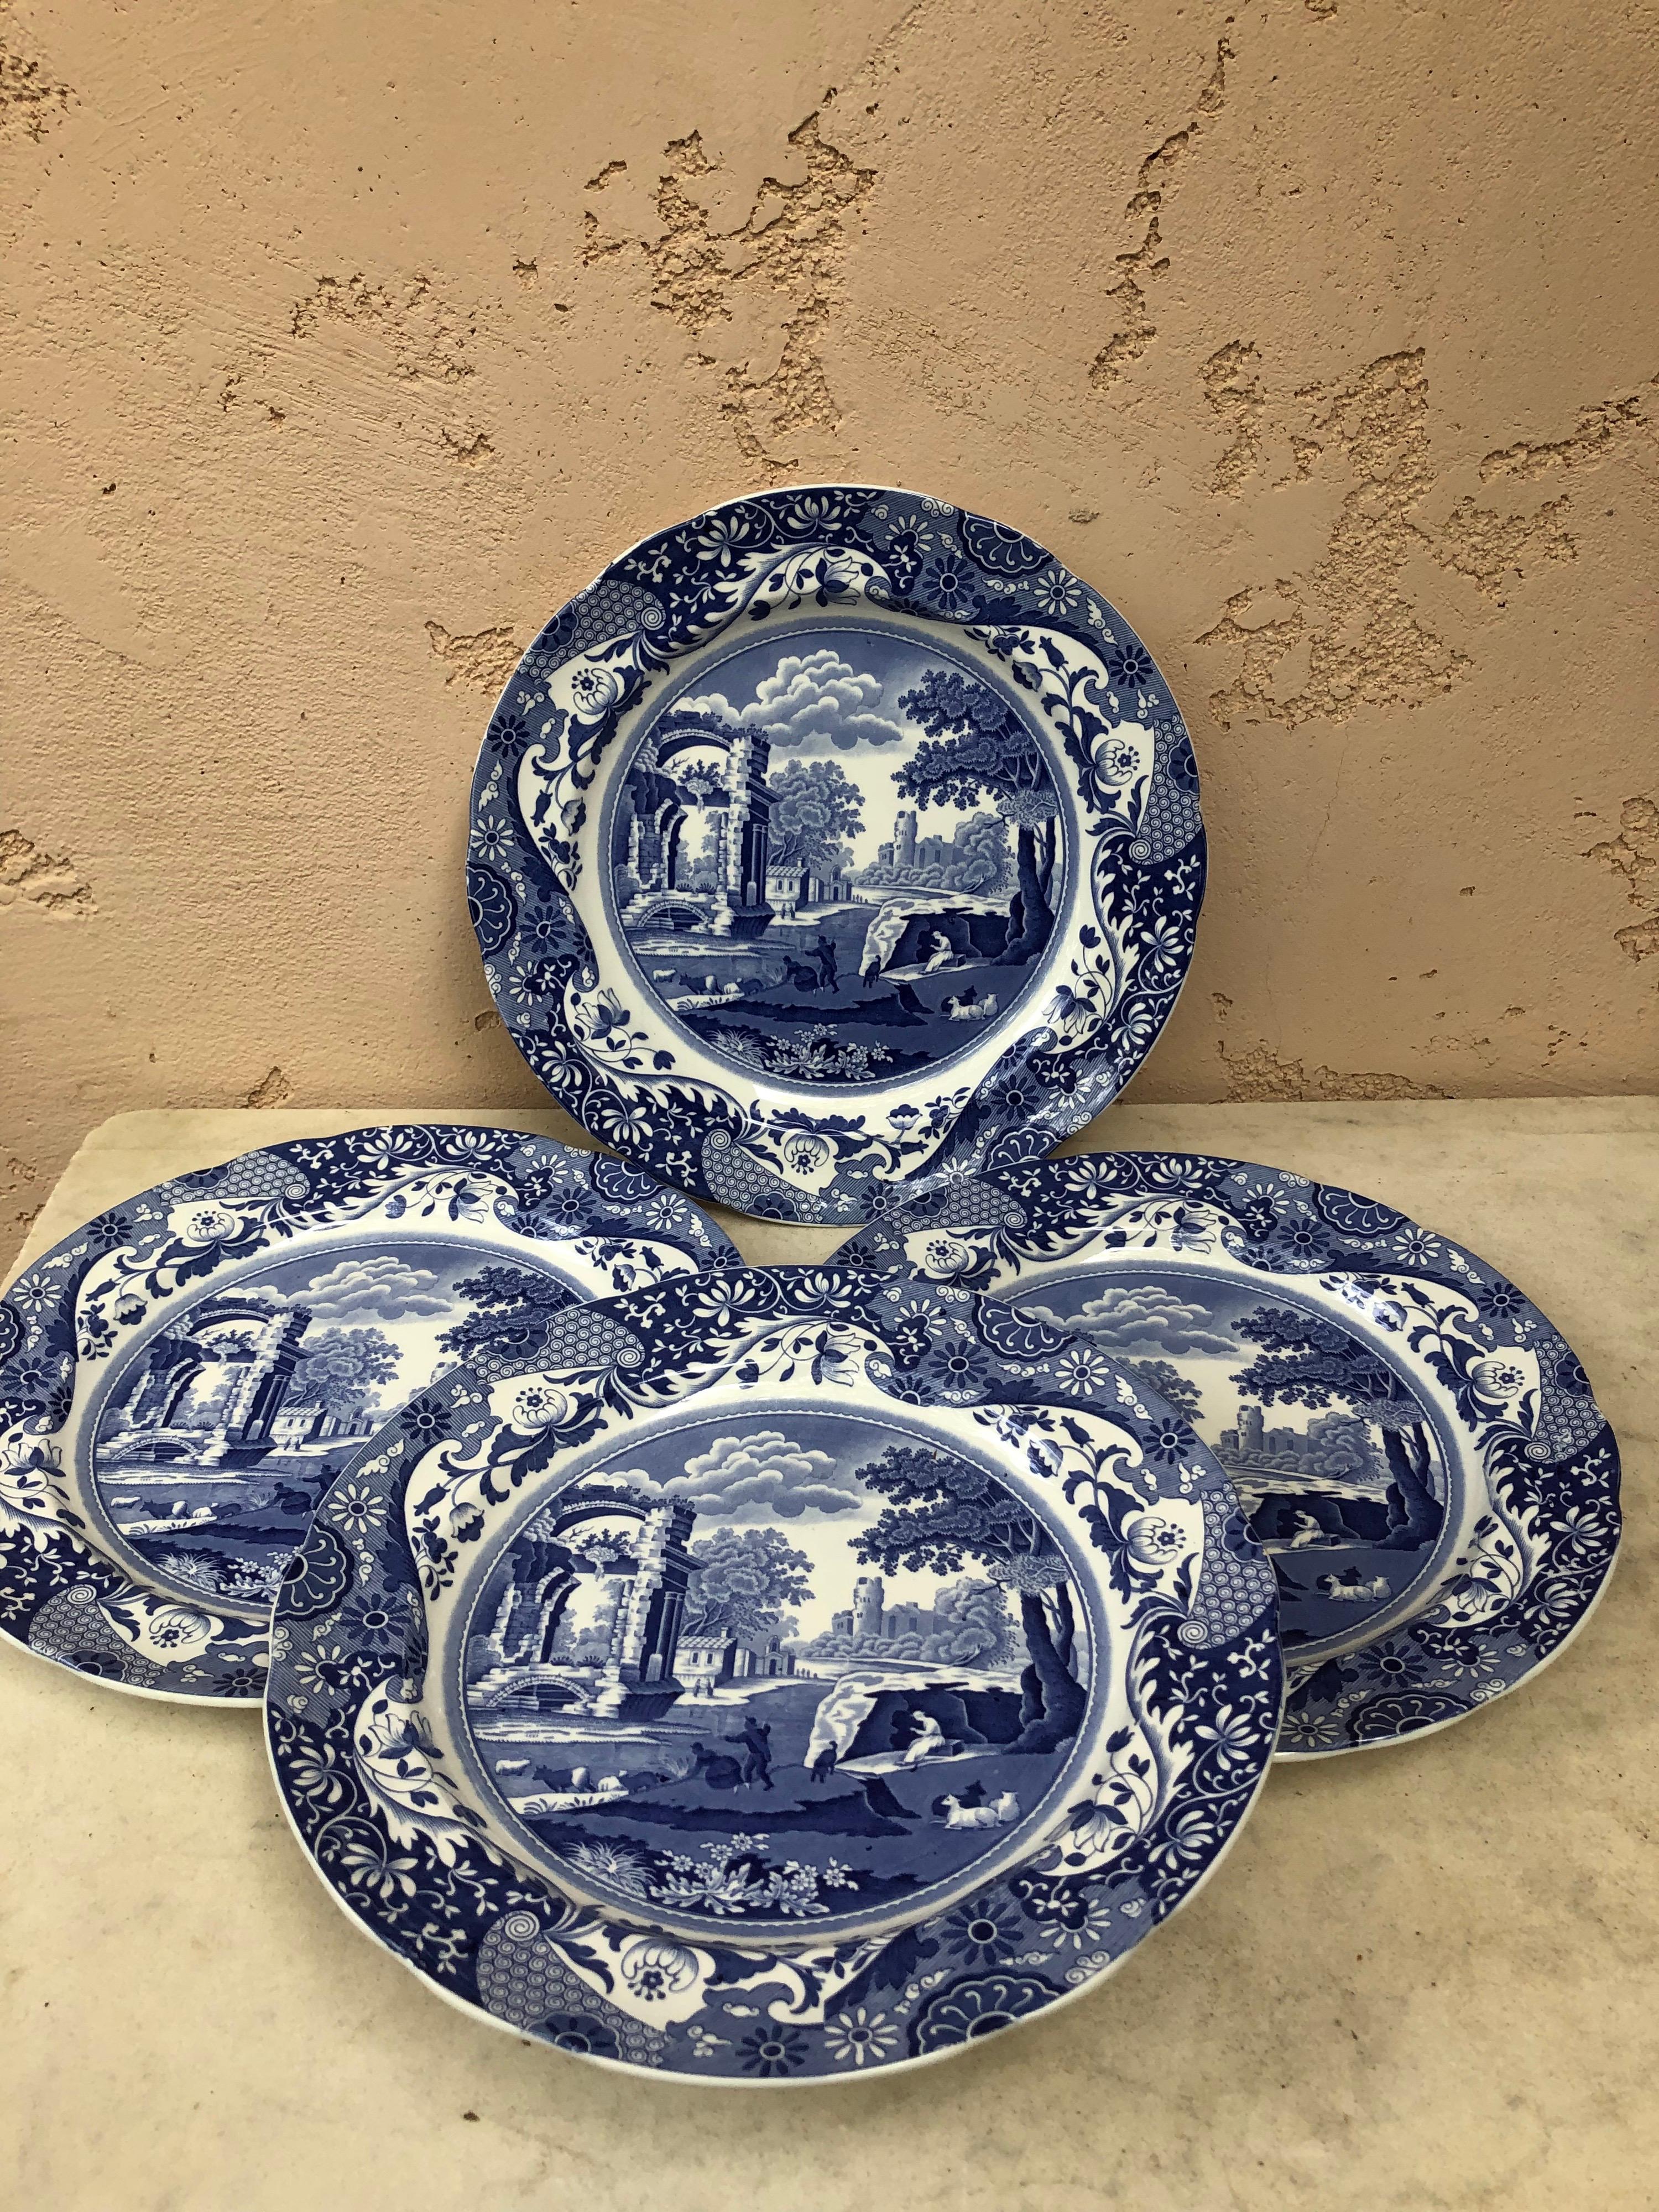 Assiette plate italienne Spode bleue et blanche Copeland circa 1920.
4 plaques disponibles.